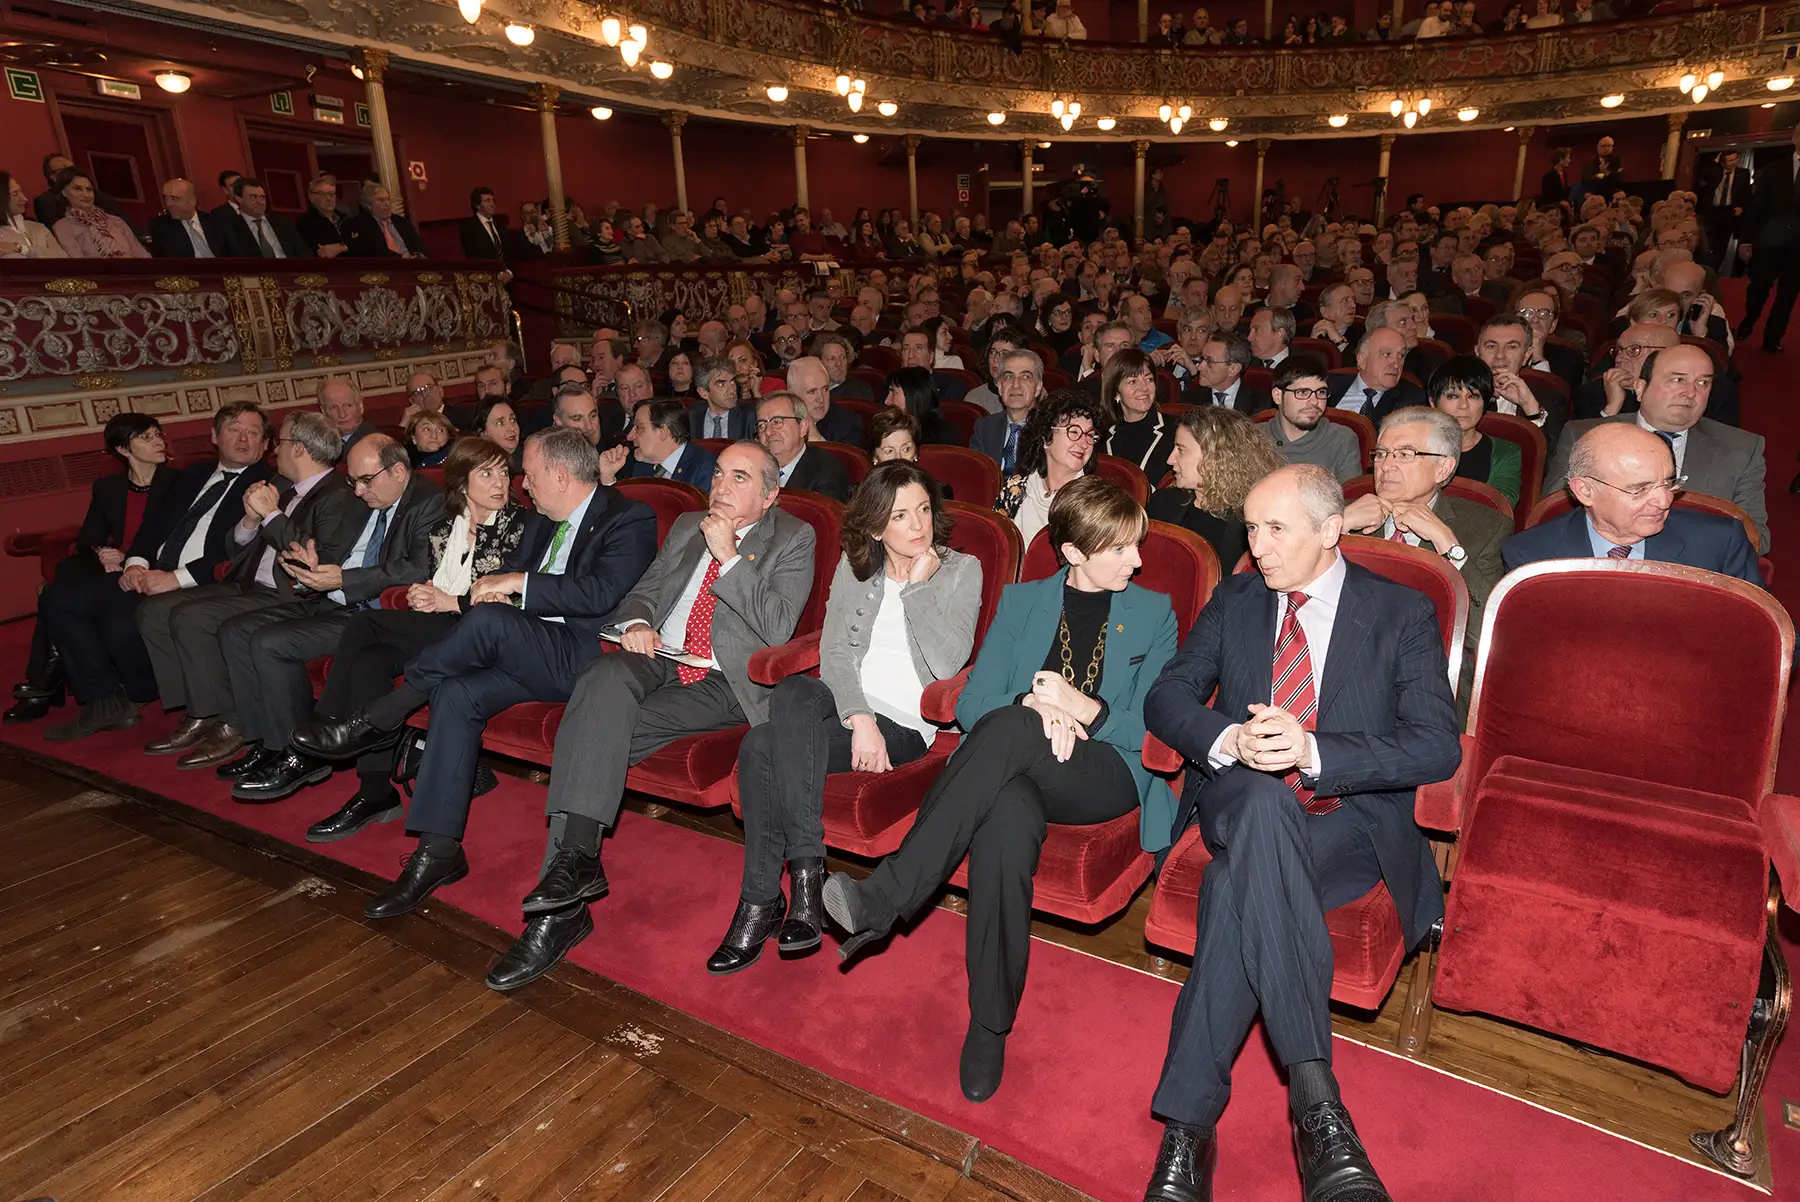 Acto de conmemoración del 140 aniversario del Concierto Económico en el teatro Arriaga de Bilbao, con la presencia del lehendakari del Gobierno Vasco, Iñigo Urkullu, y los diputados generales de Bizkaia, Gipuzkoa y Álava-Araba